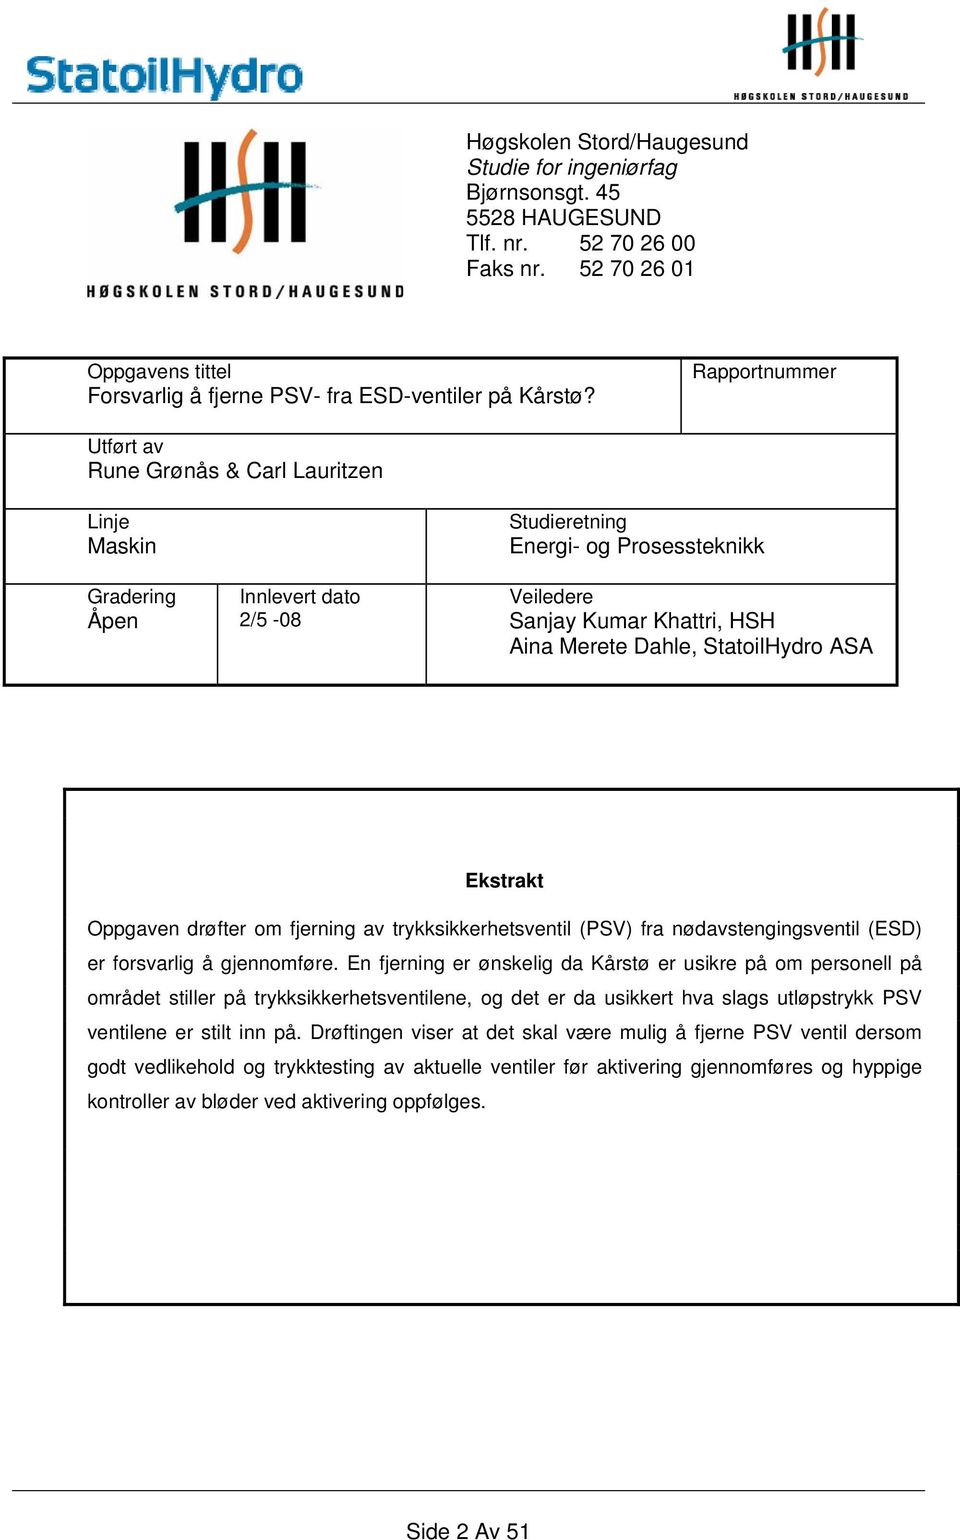 StatoilHydro ASA Ekstrakt Oppgaven drøfter om fjerning av trykksikkerhetsventil (PSV) fra nødavstengingsventil (ESD) er forsvarlig å gjennomføre.